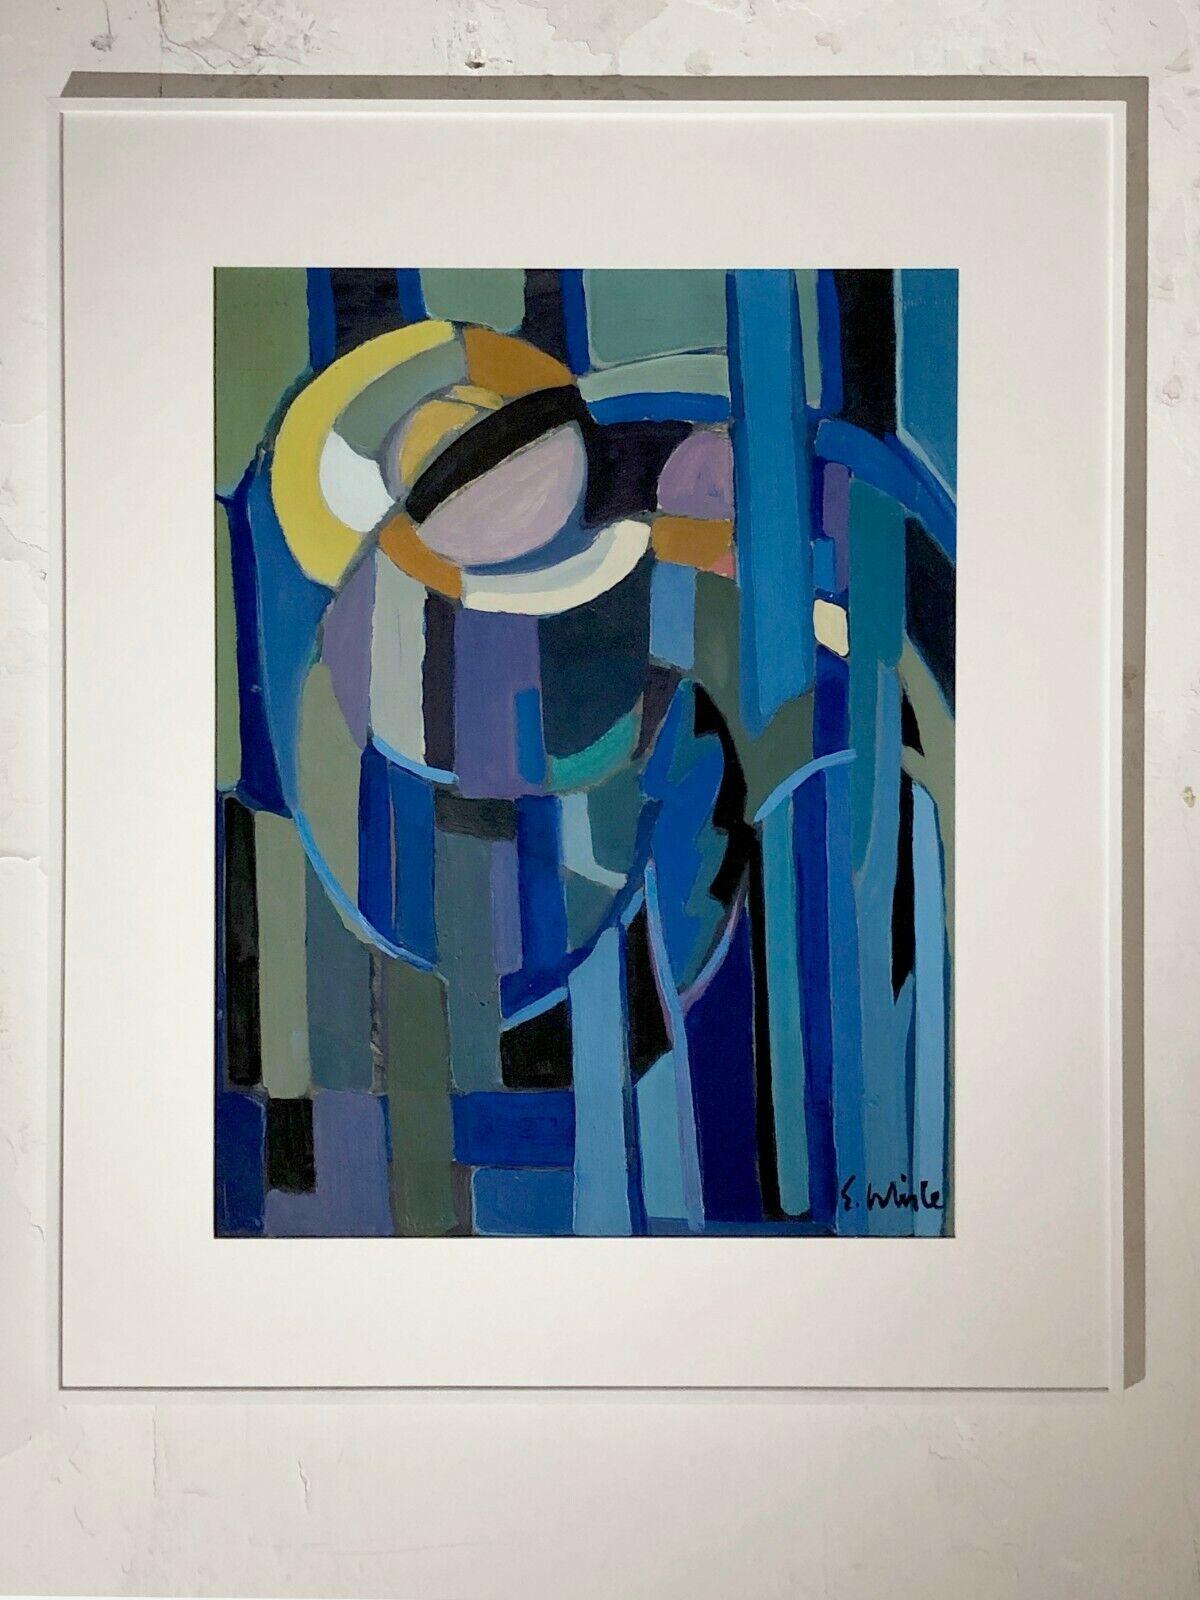 Ein authentisches Gemälde, sowohl abstraktes als auch figuratives Werk, Expressionist, Kubist, Gouache auf Papier, das eine blaue stilisierte Nachtlandschaft darzustellen scheint, frei gemalt mit einer schönen Kombination aus blauen Farben und